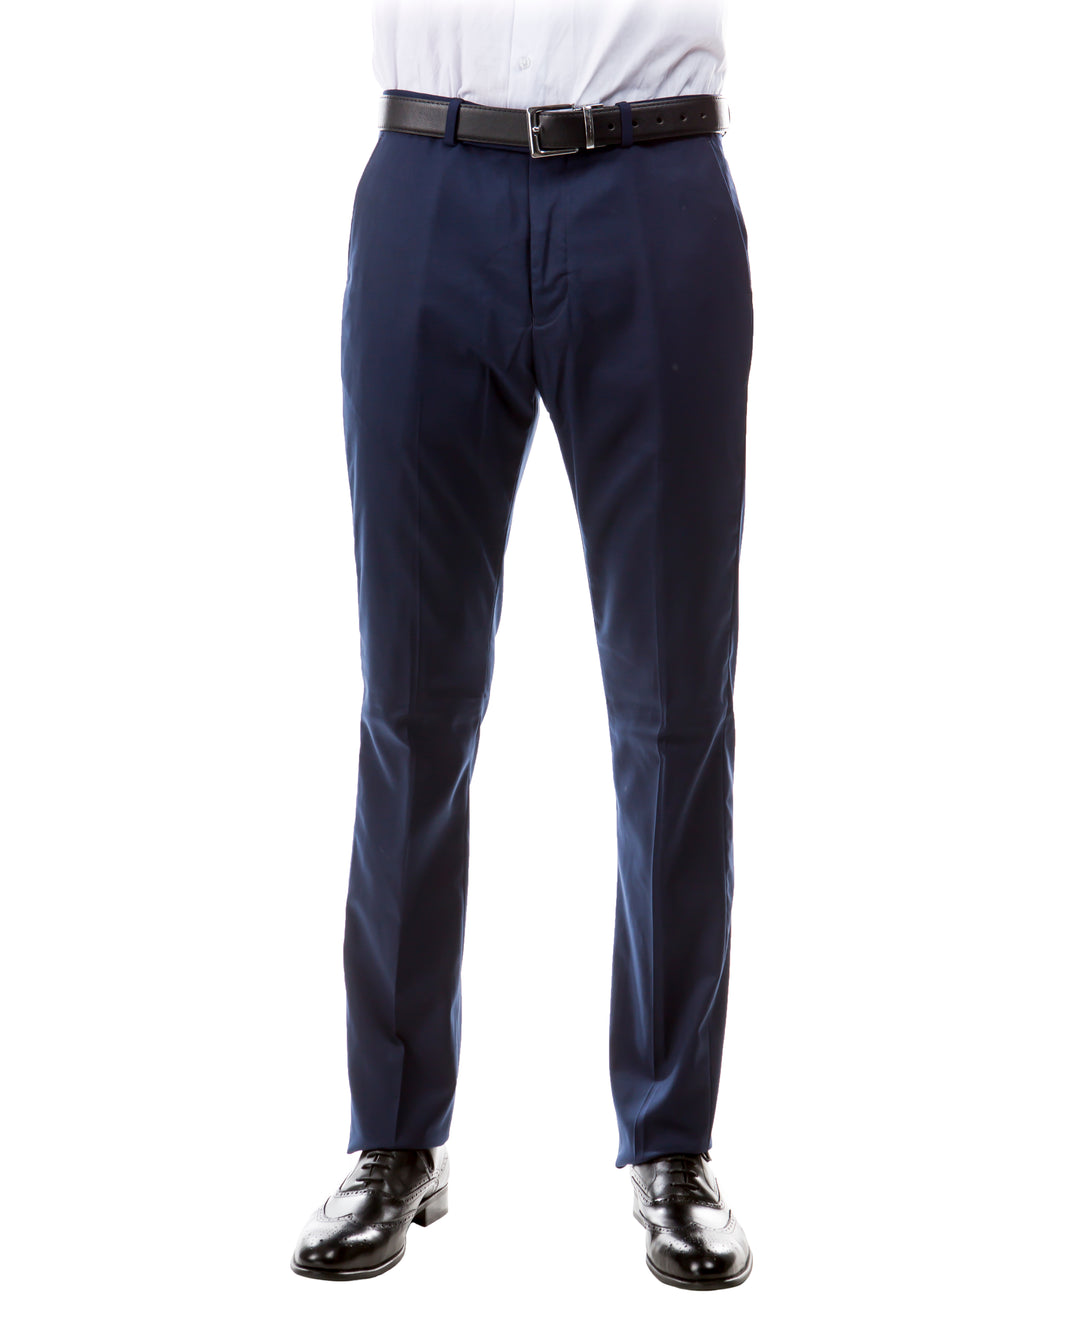 Zegarie Suit Separates Navy Solid Men's Dress Pants